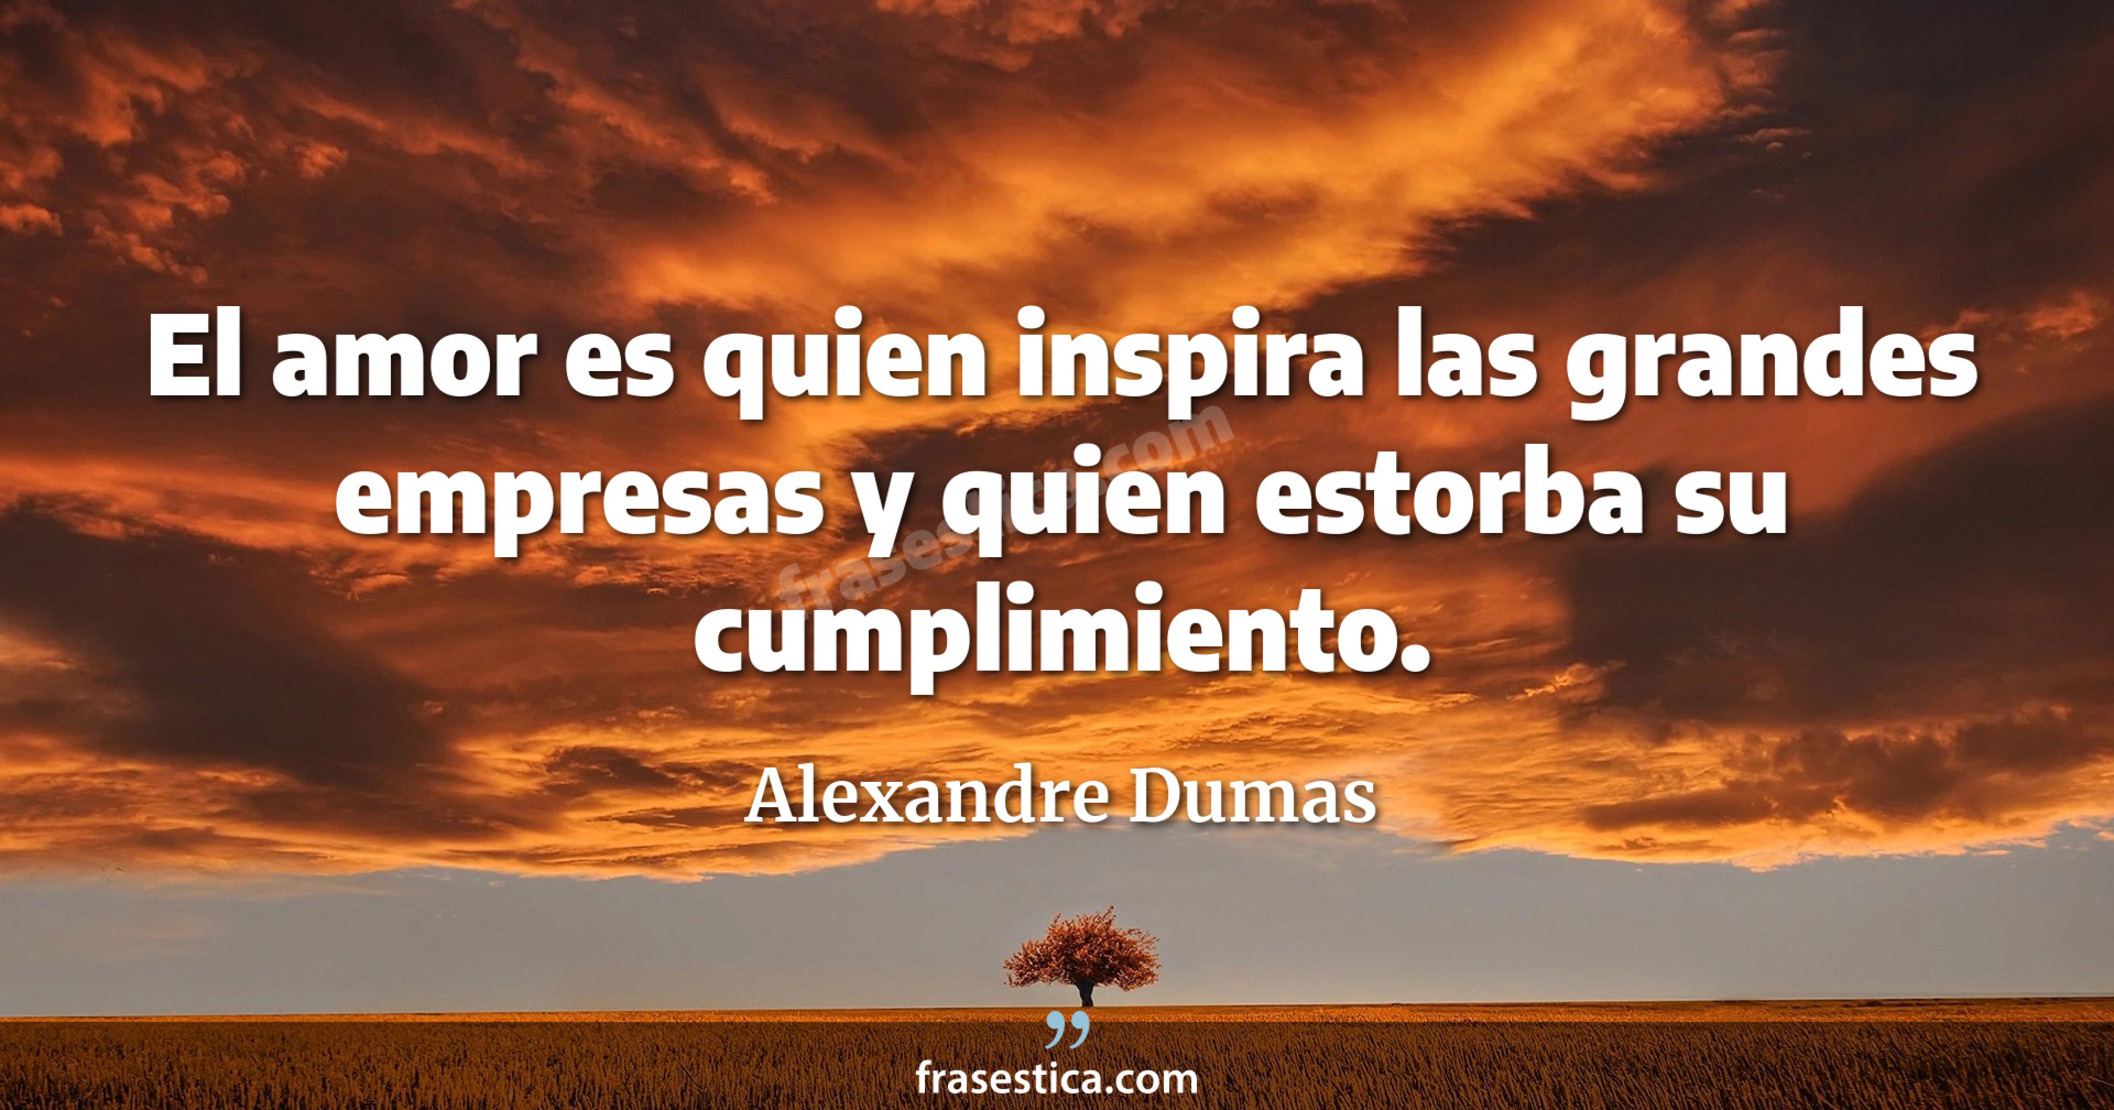 El amor es quien inspira las grandes empresas y quien estorba su cumplimiento. - Alexandre Dumas